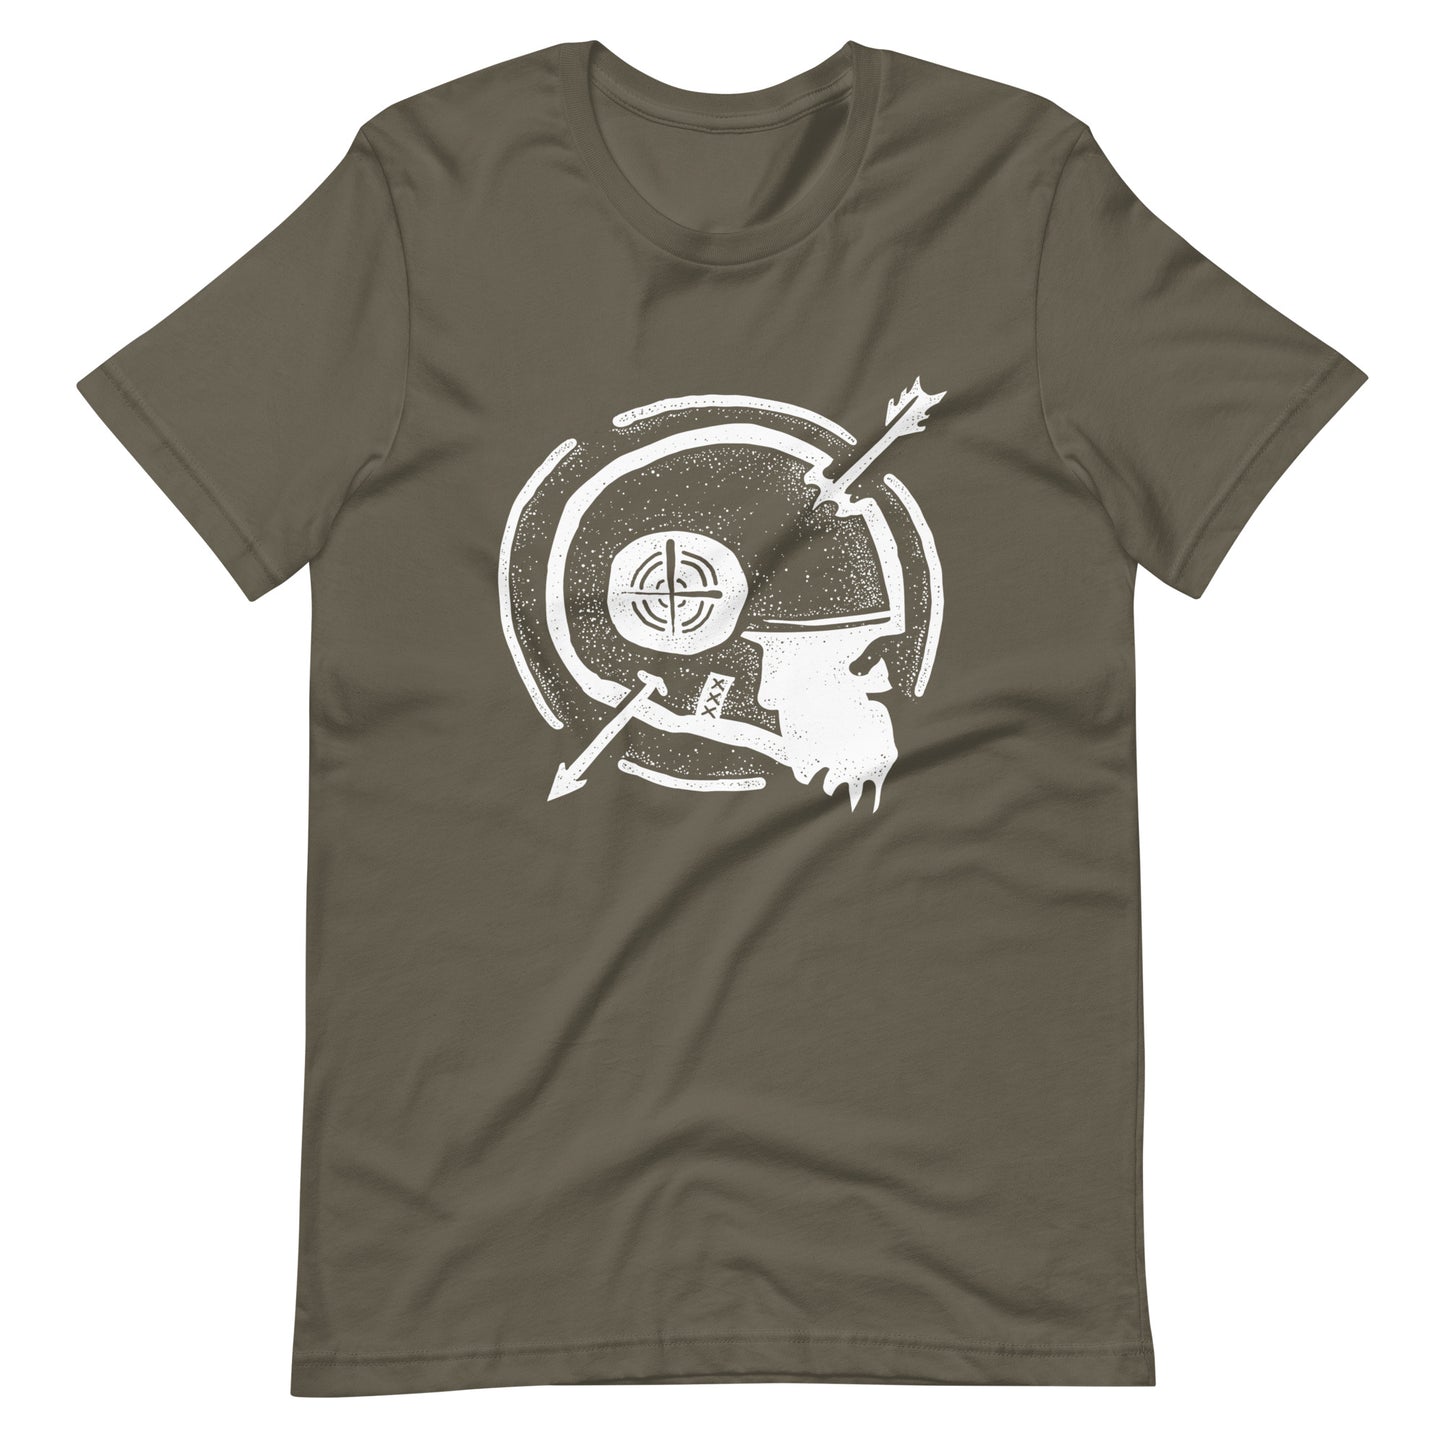 Dead Arrow White - Men's t-shirt - Army Front